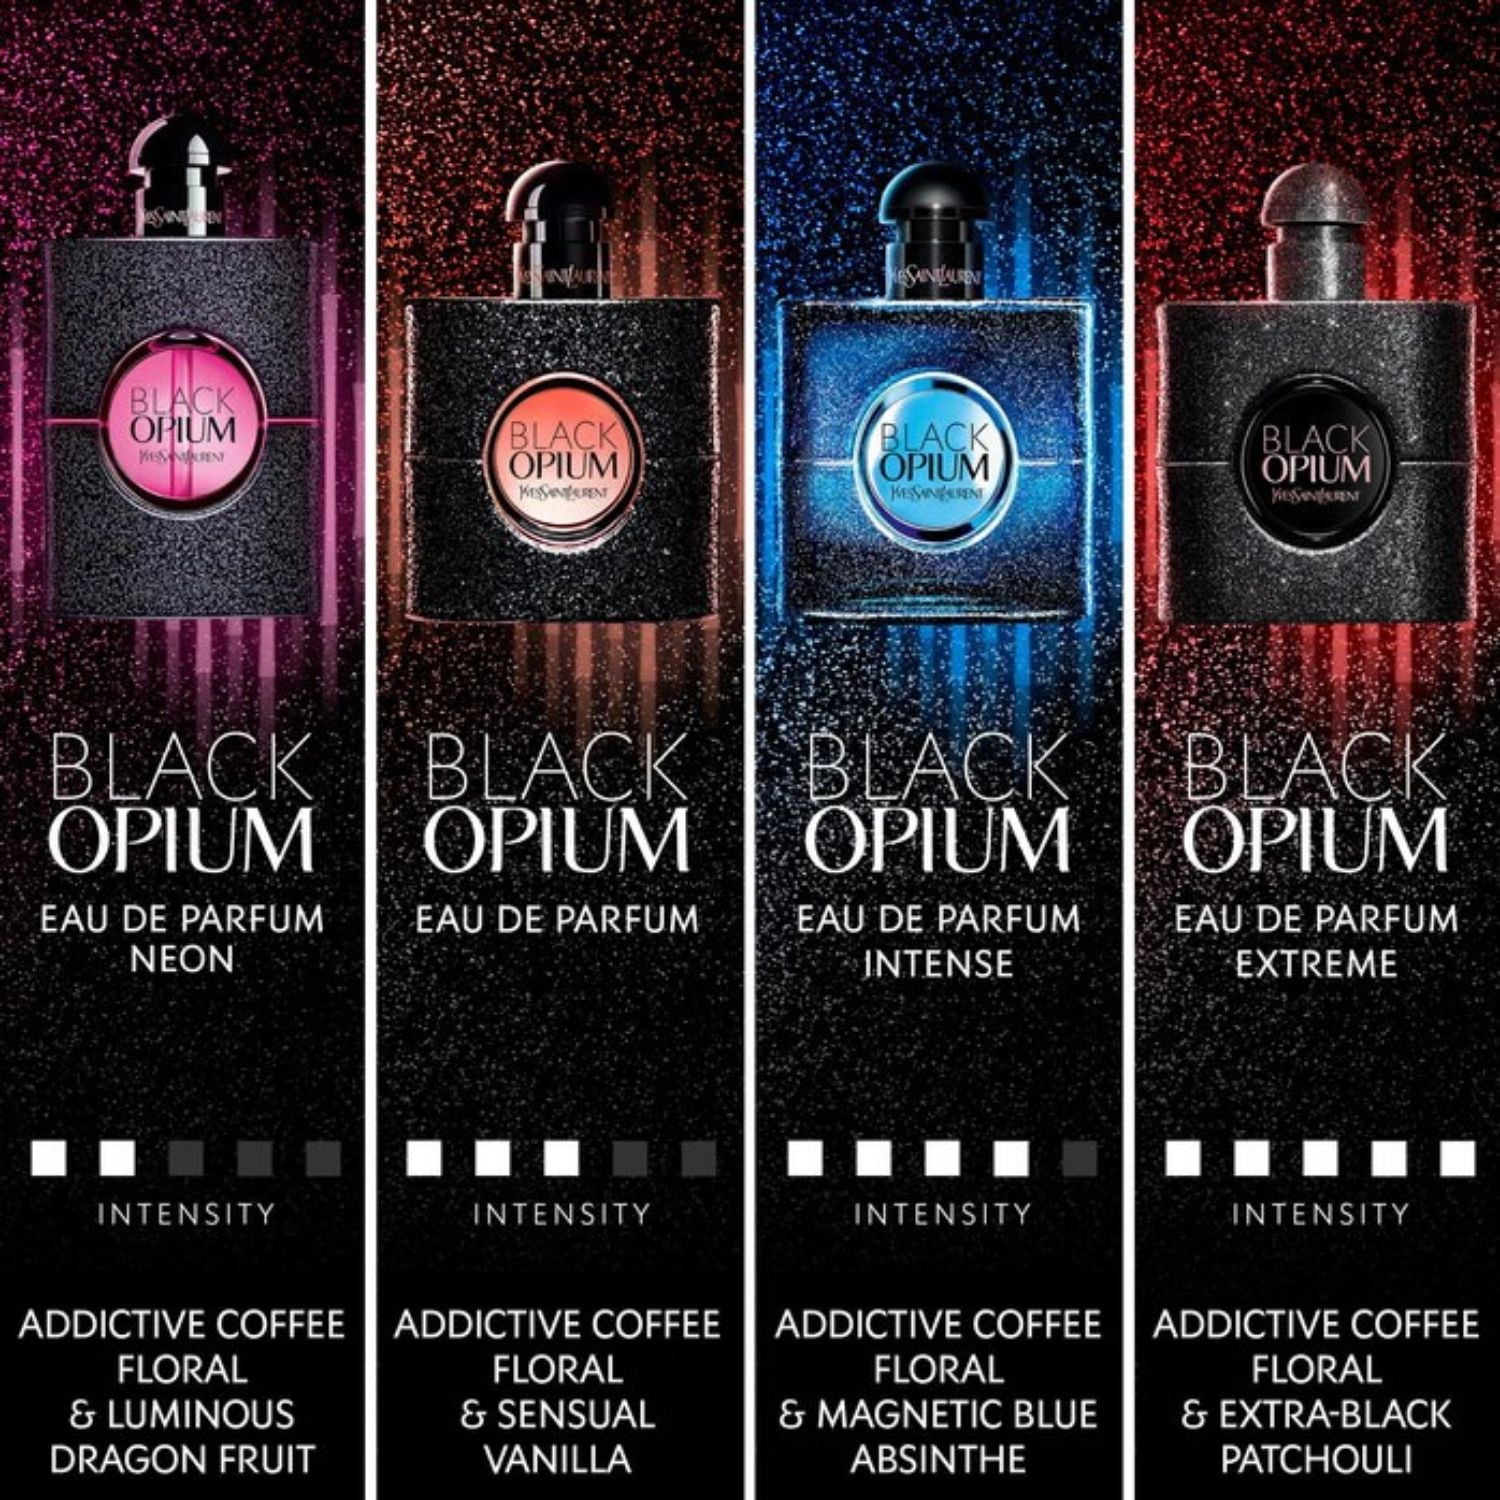 Yves Saint Laurent YSL Black Opium Intense Eau De Parfum Spray 1.6